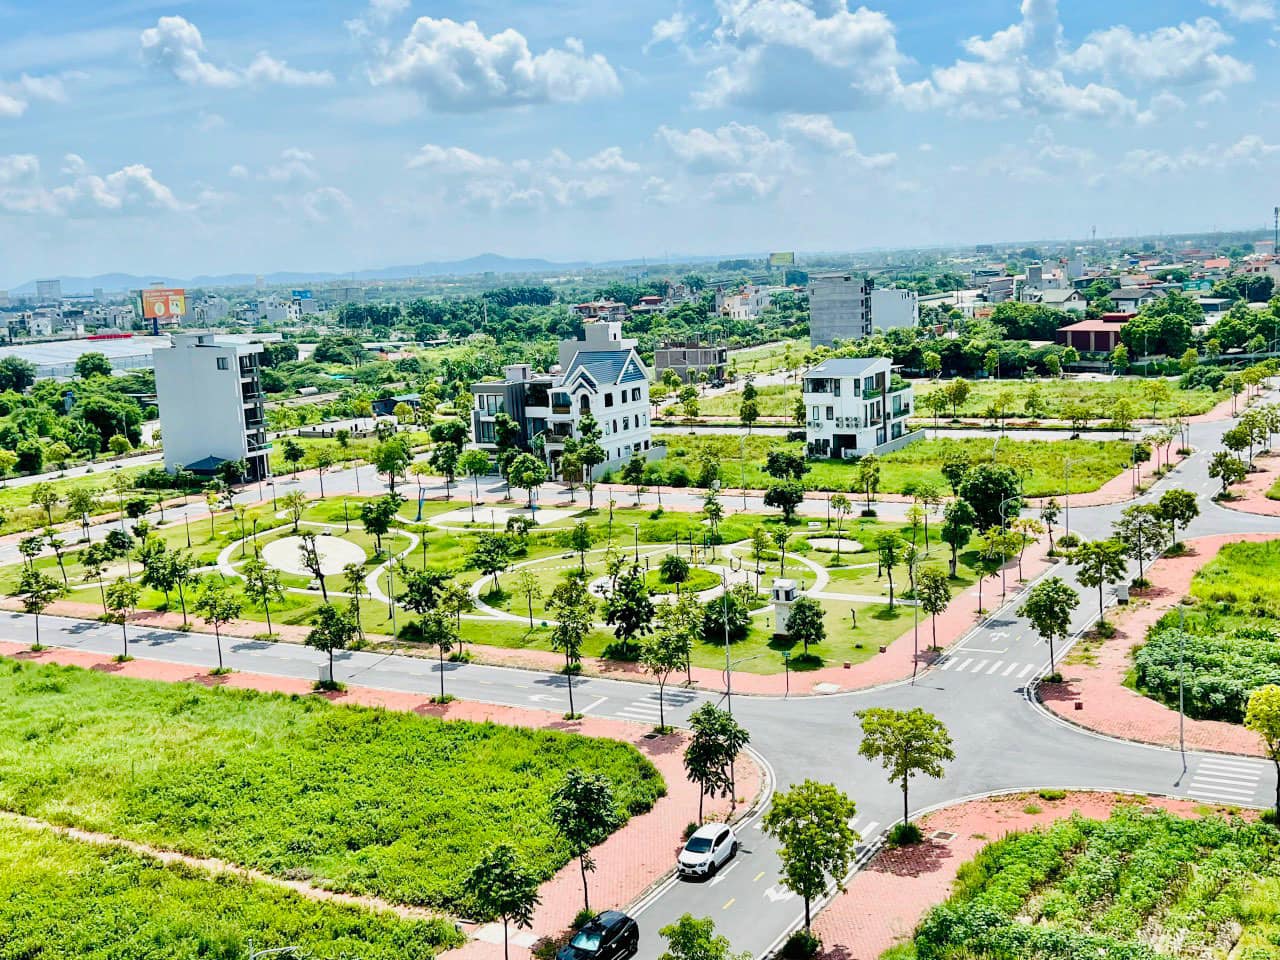 Bán lô góc nhà vườn KDC Trần Hưng Đạo, TP Hải Dương 250.53m2, 2 mặt đường, sổ hồng 2